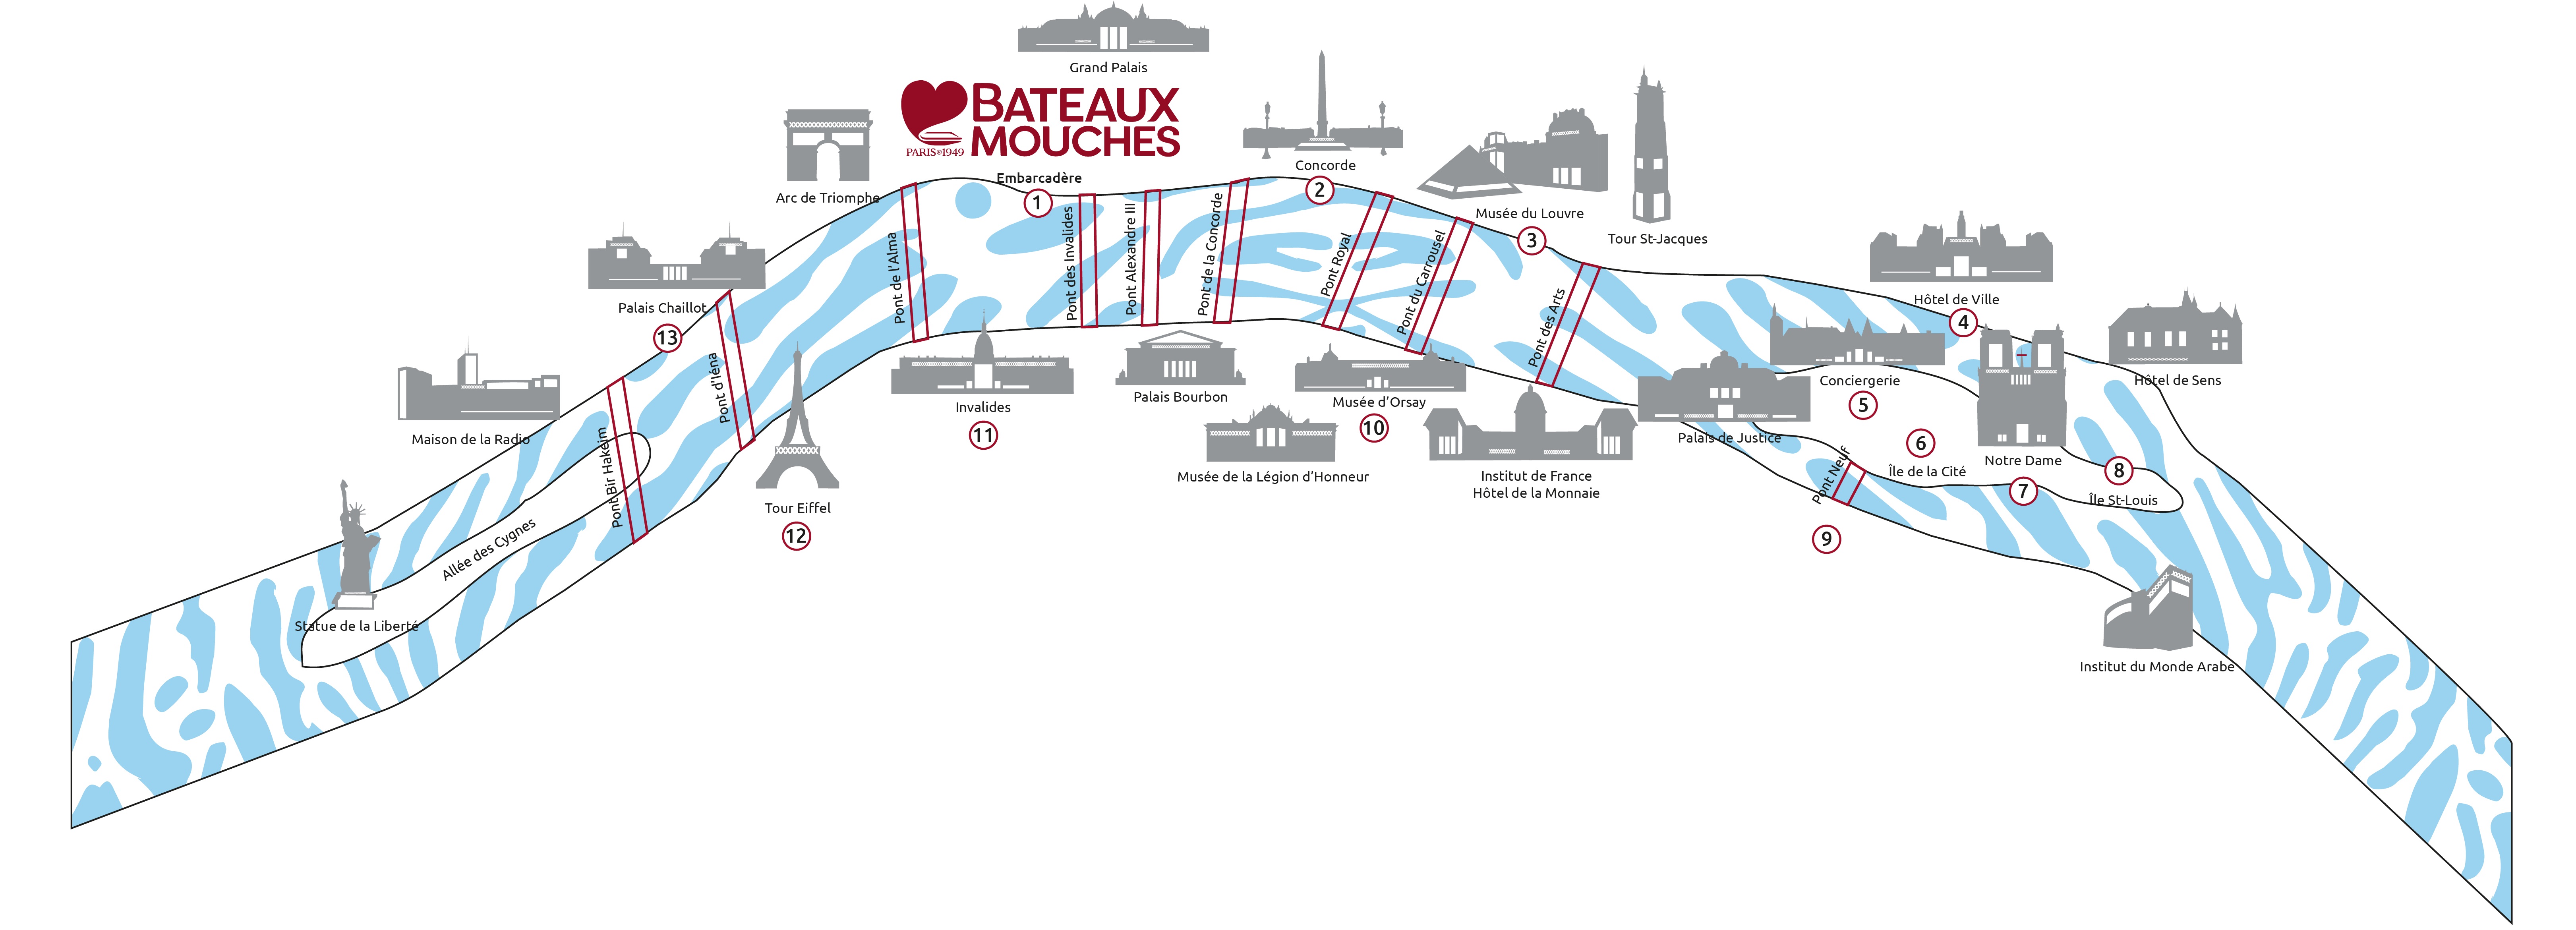 Bateaux-Mouches®のクルーズコース